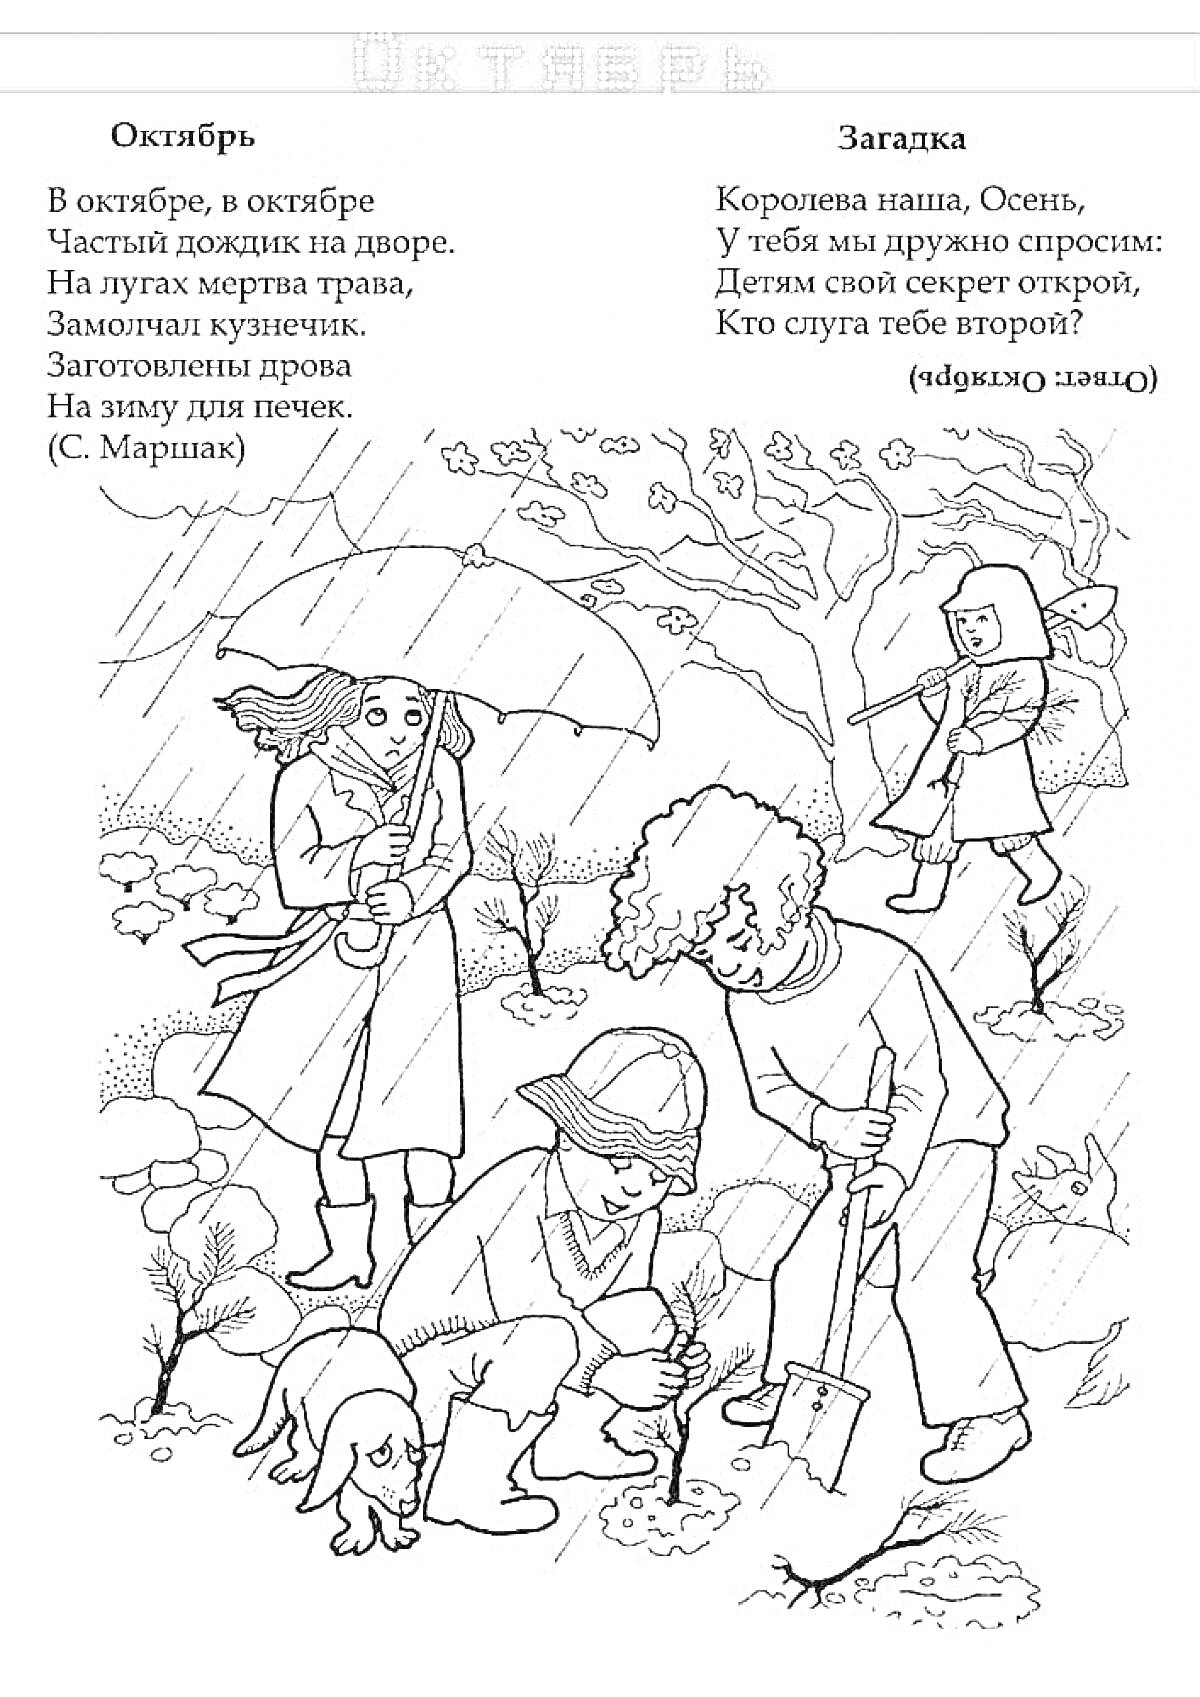 Раскраска Люди и животные в осеннем парке под дождем: мальчик с зонтом, женщина с зонтом, работающий мужчина с лопатой, собака, деревья, кусты, падающие листья, загадка про осень